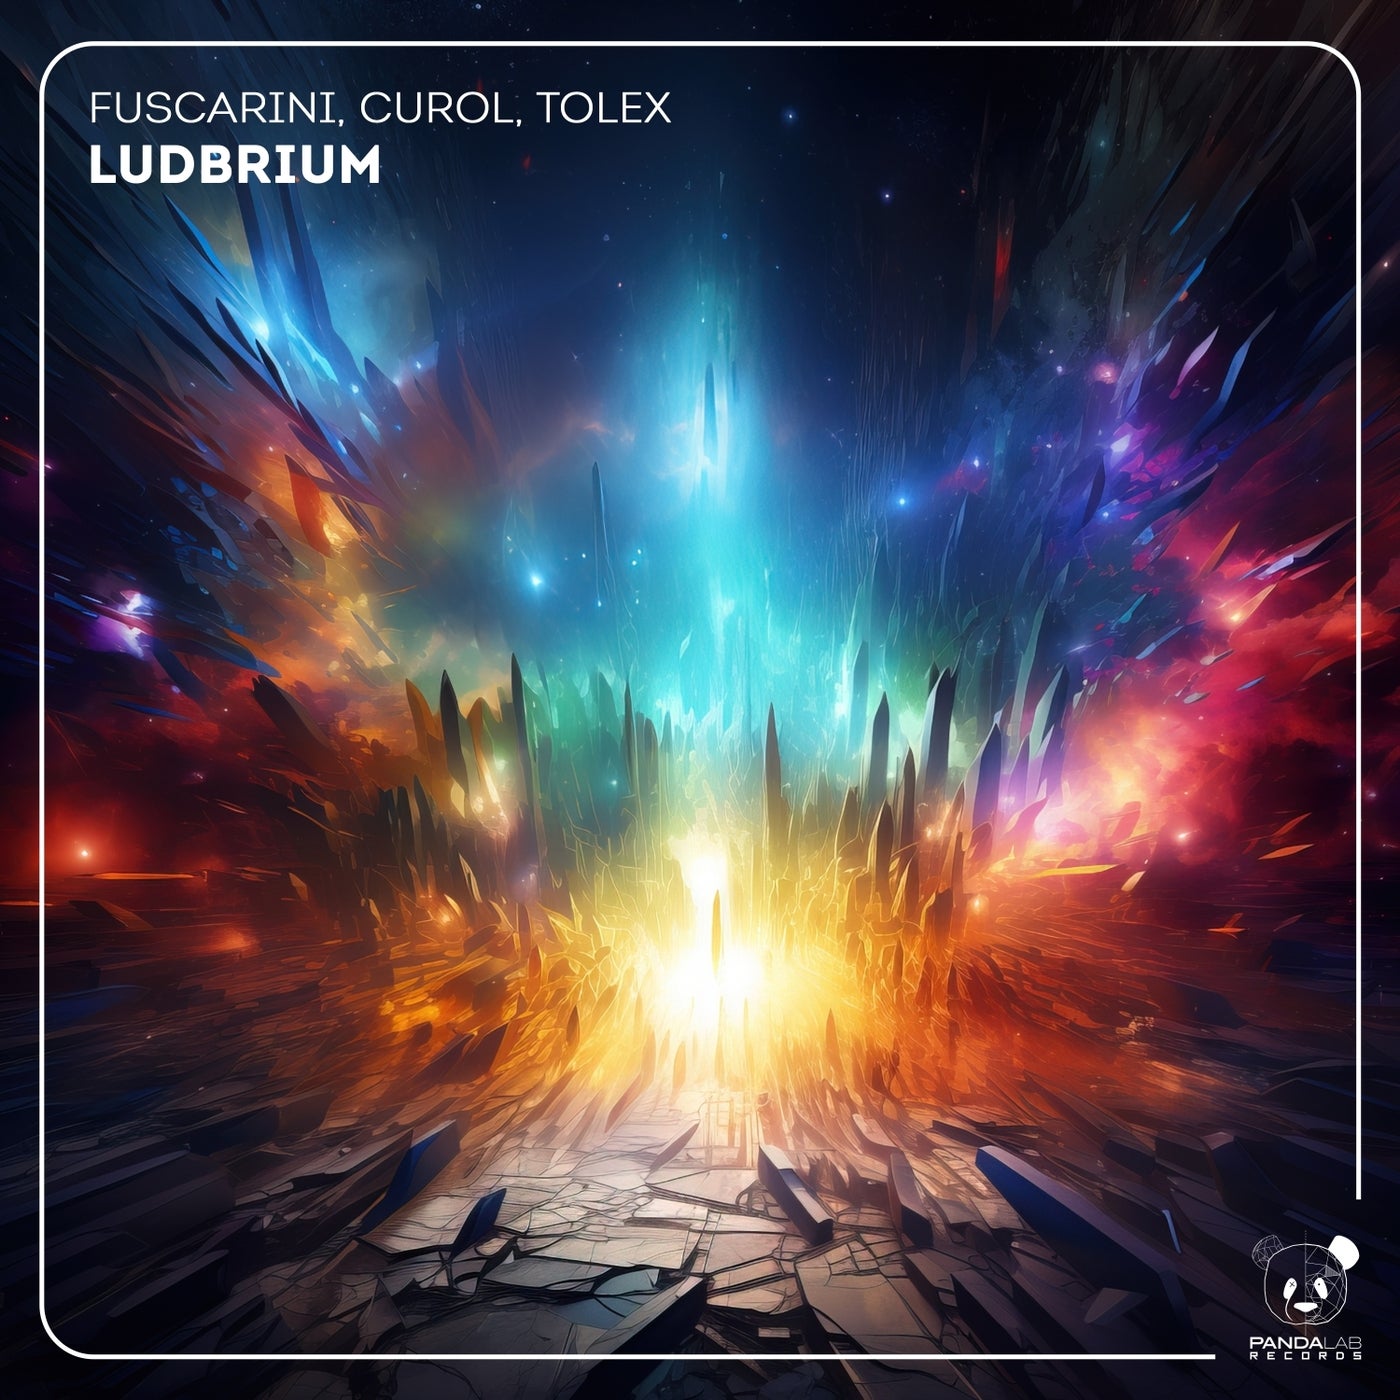 Ludbrium